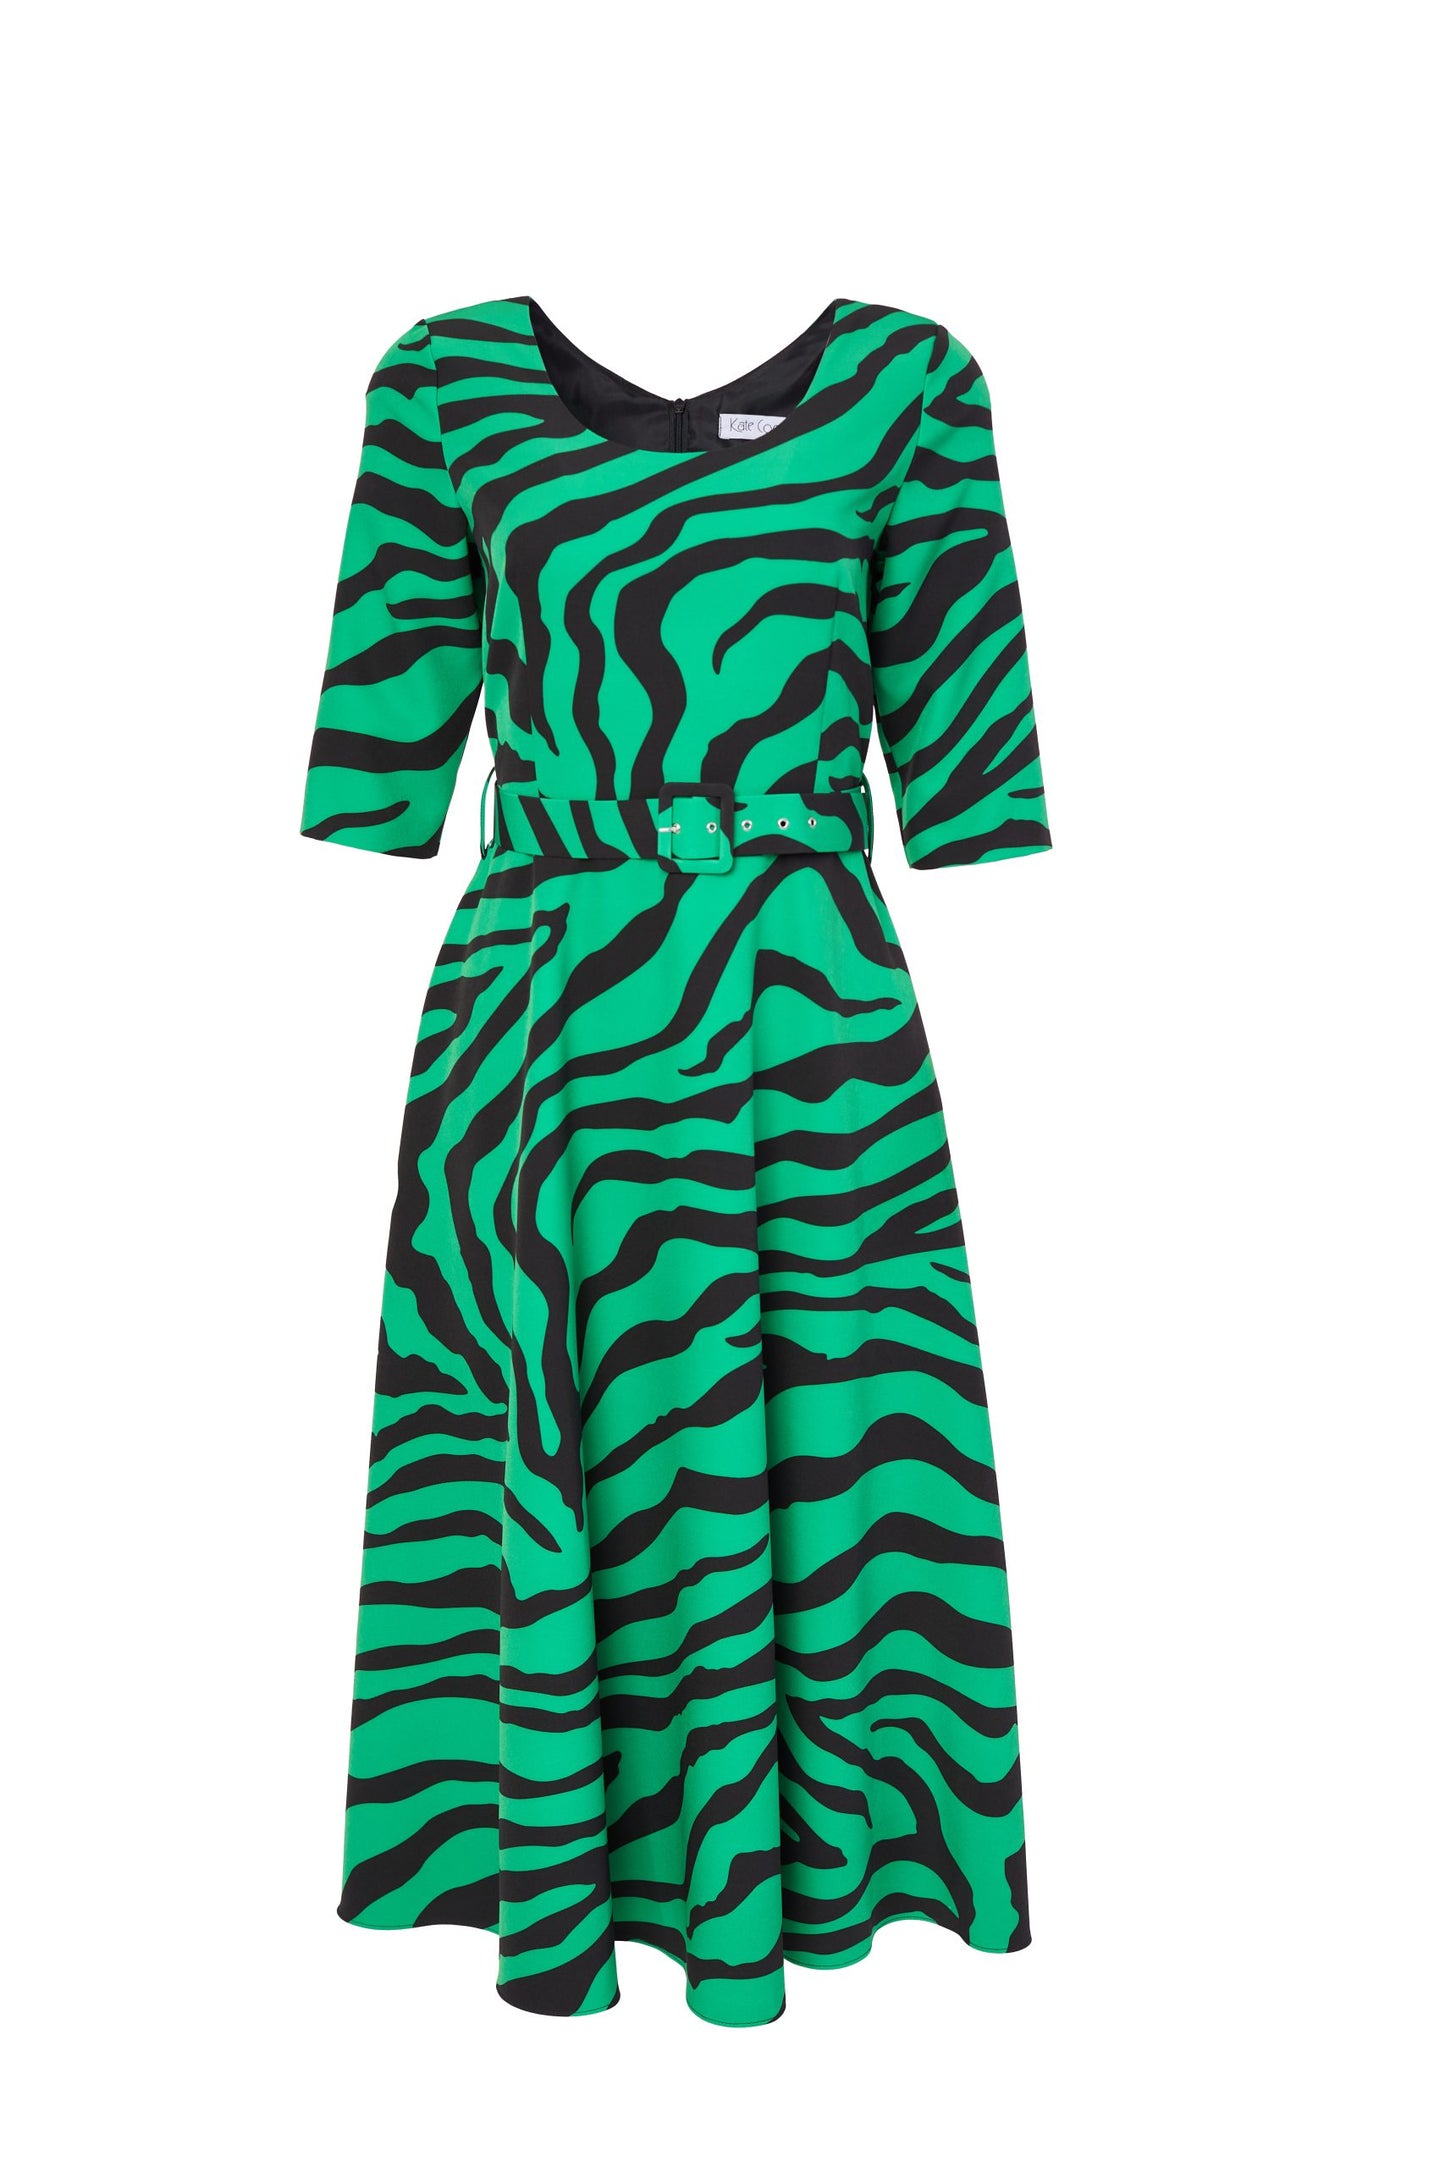 Green Zebra Print Dress